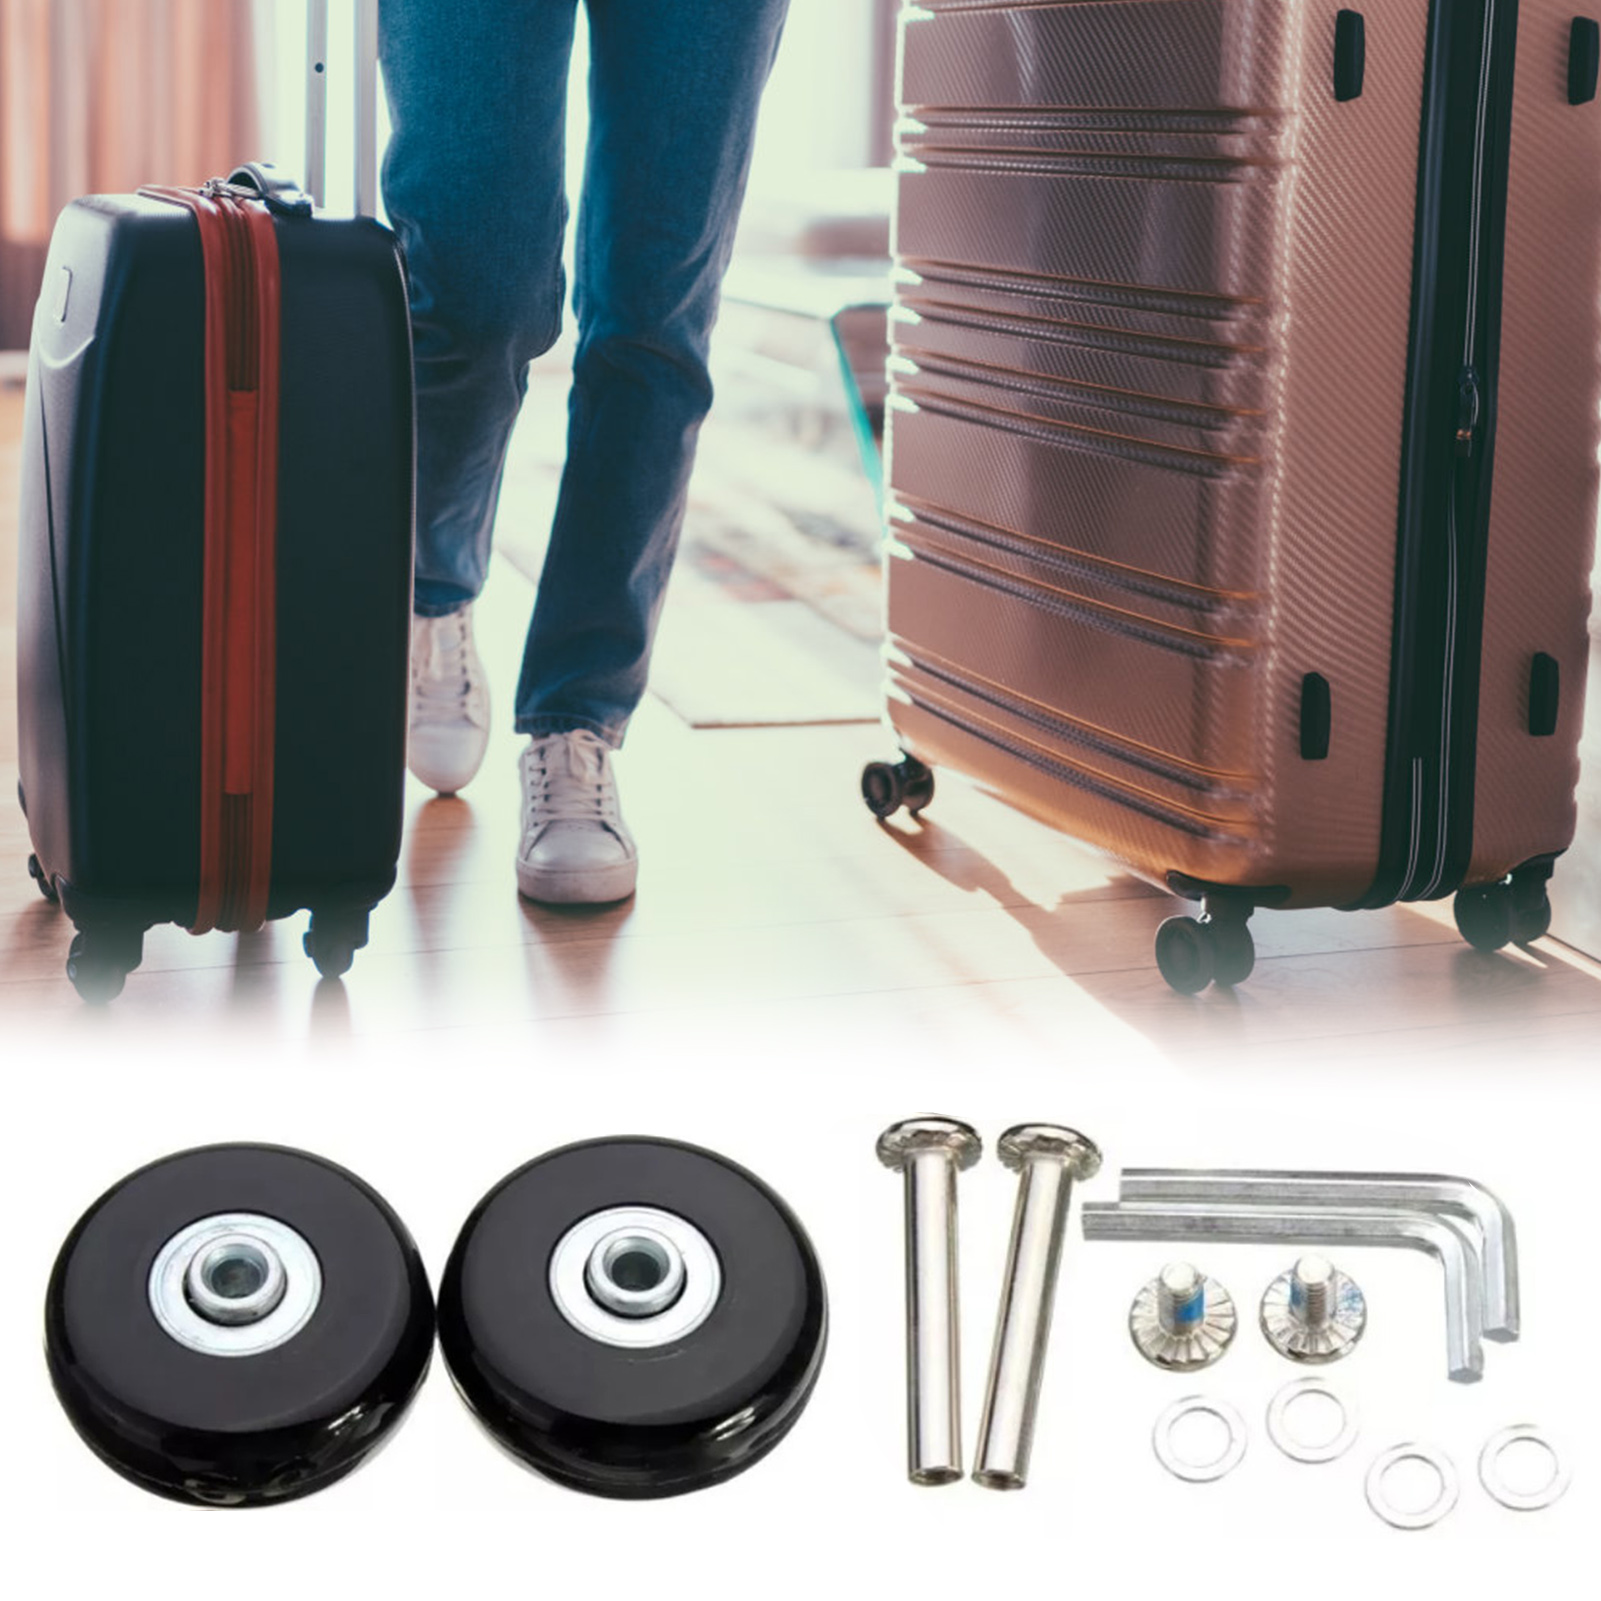 Xianman 4 chiếc vali hành lý bằng cao su bánh xe hành lý thông dụng thay thế cho vali va li có bánh xe